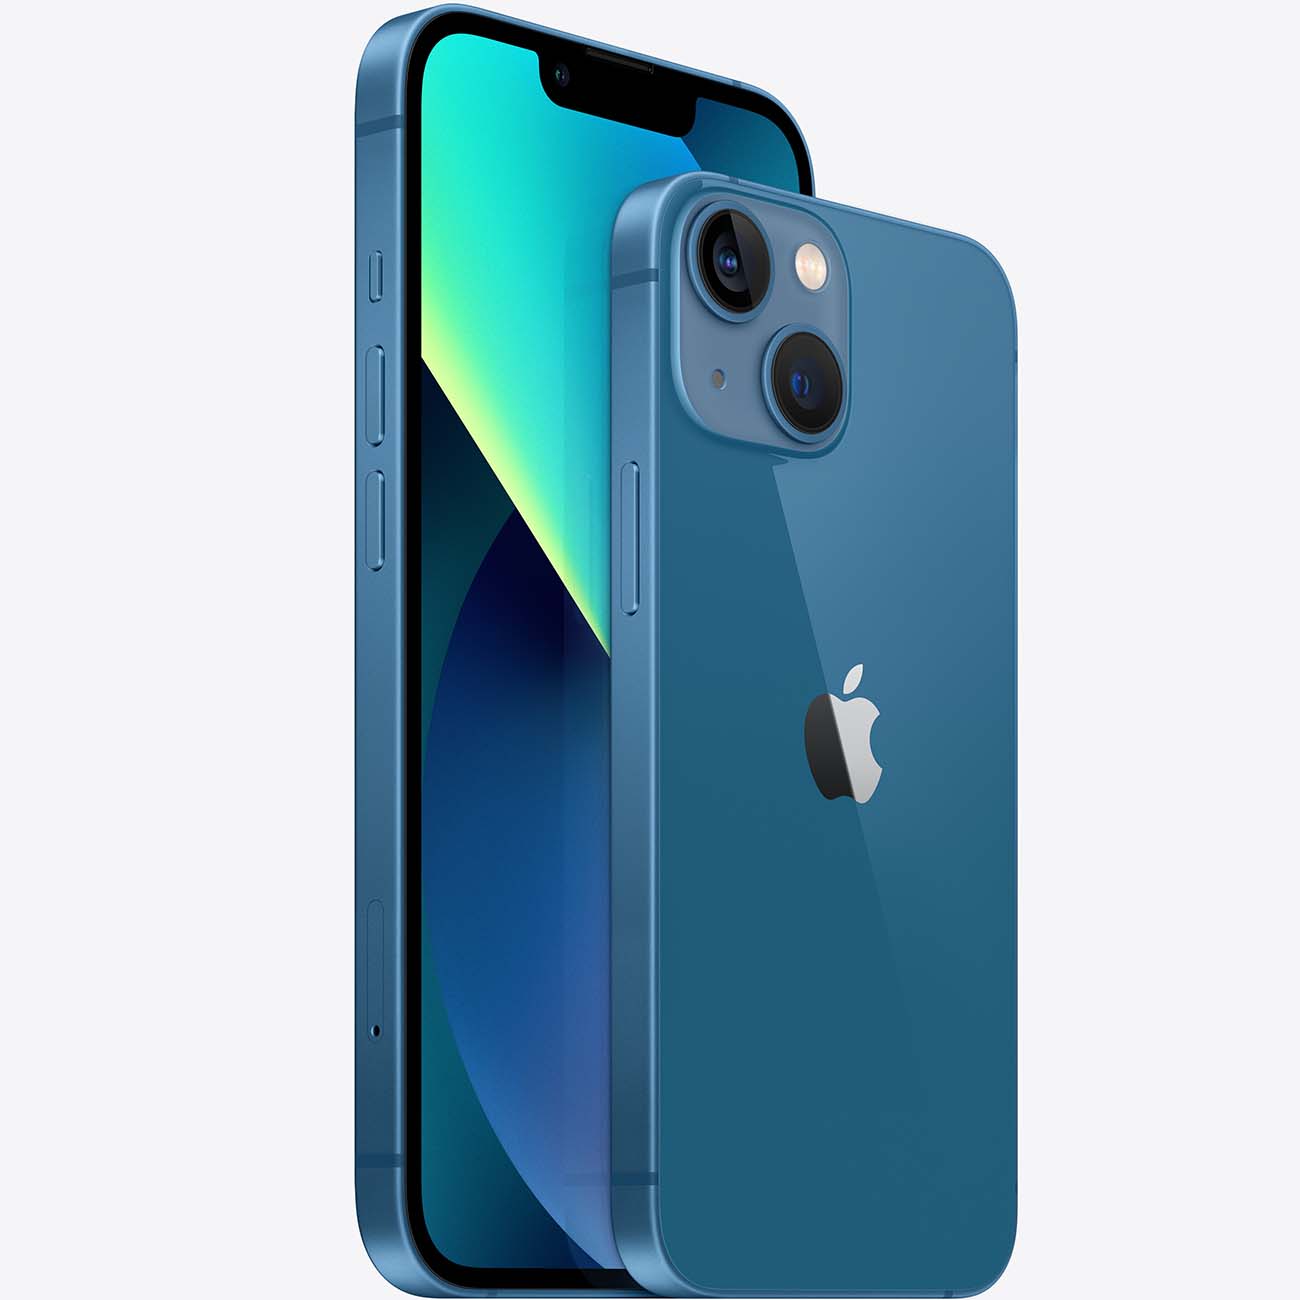 Купить смартфон apple iphone 13 mini 128gb blue Apple iPhone 13 mini в официальном магазине Apple, Samsung, Xiaomi. iPixel.ru Купить, заказ, кредит, рассрочка, отзывы,  характеристики, цена,  фотографии, в подарок.